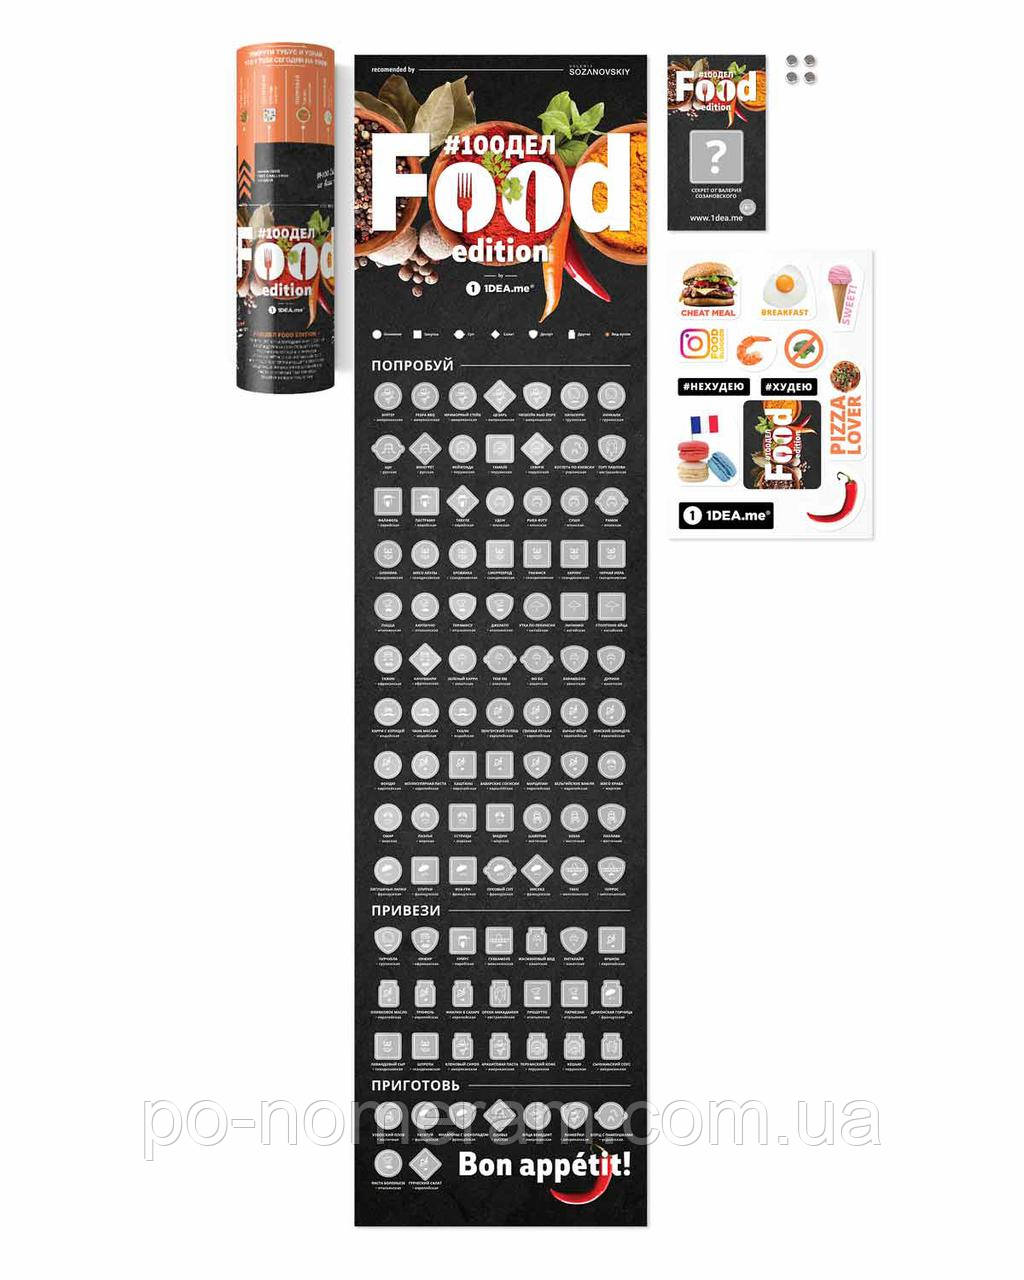 Скретч постер #100ДЕЛ FOOD edition